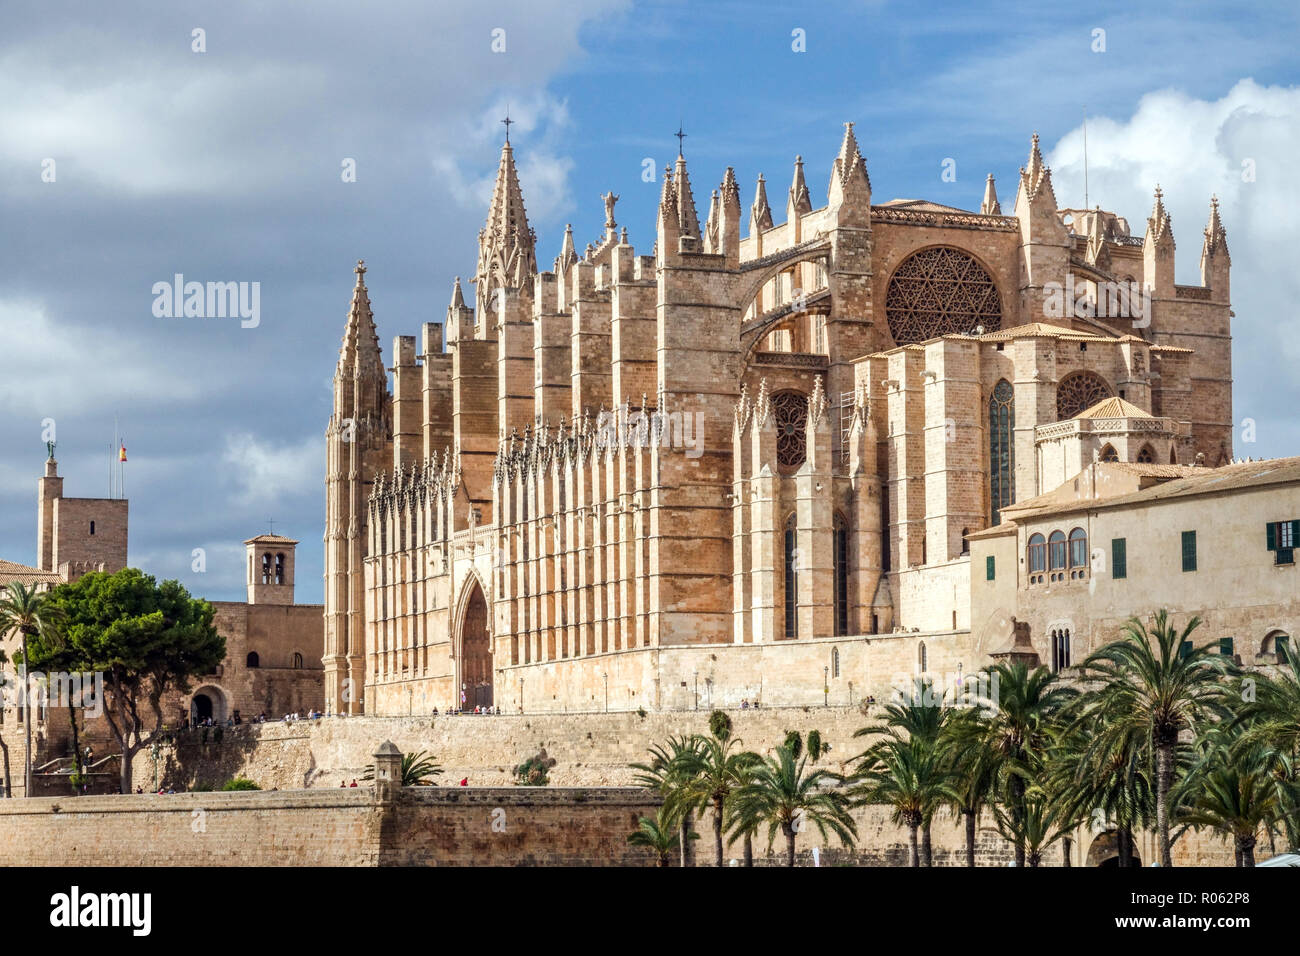 Vue sur les cathédrales de la cathédrale de Palma de Majorque Banque D'Images